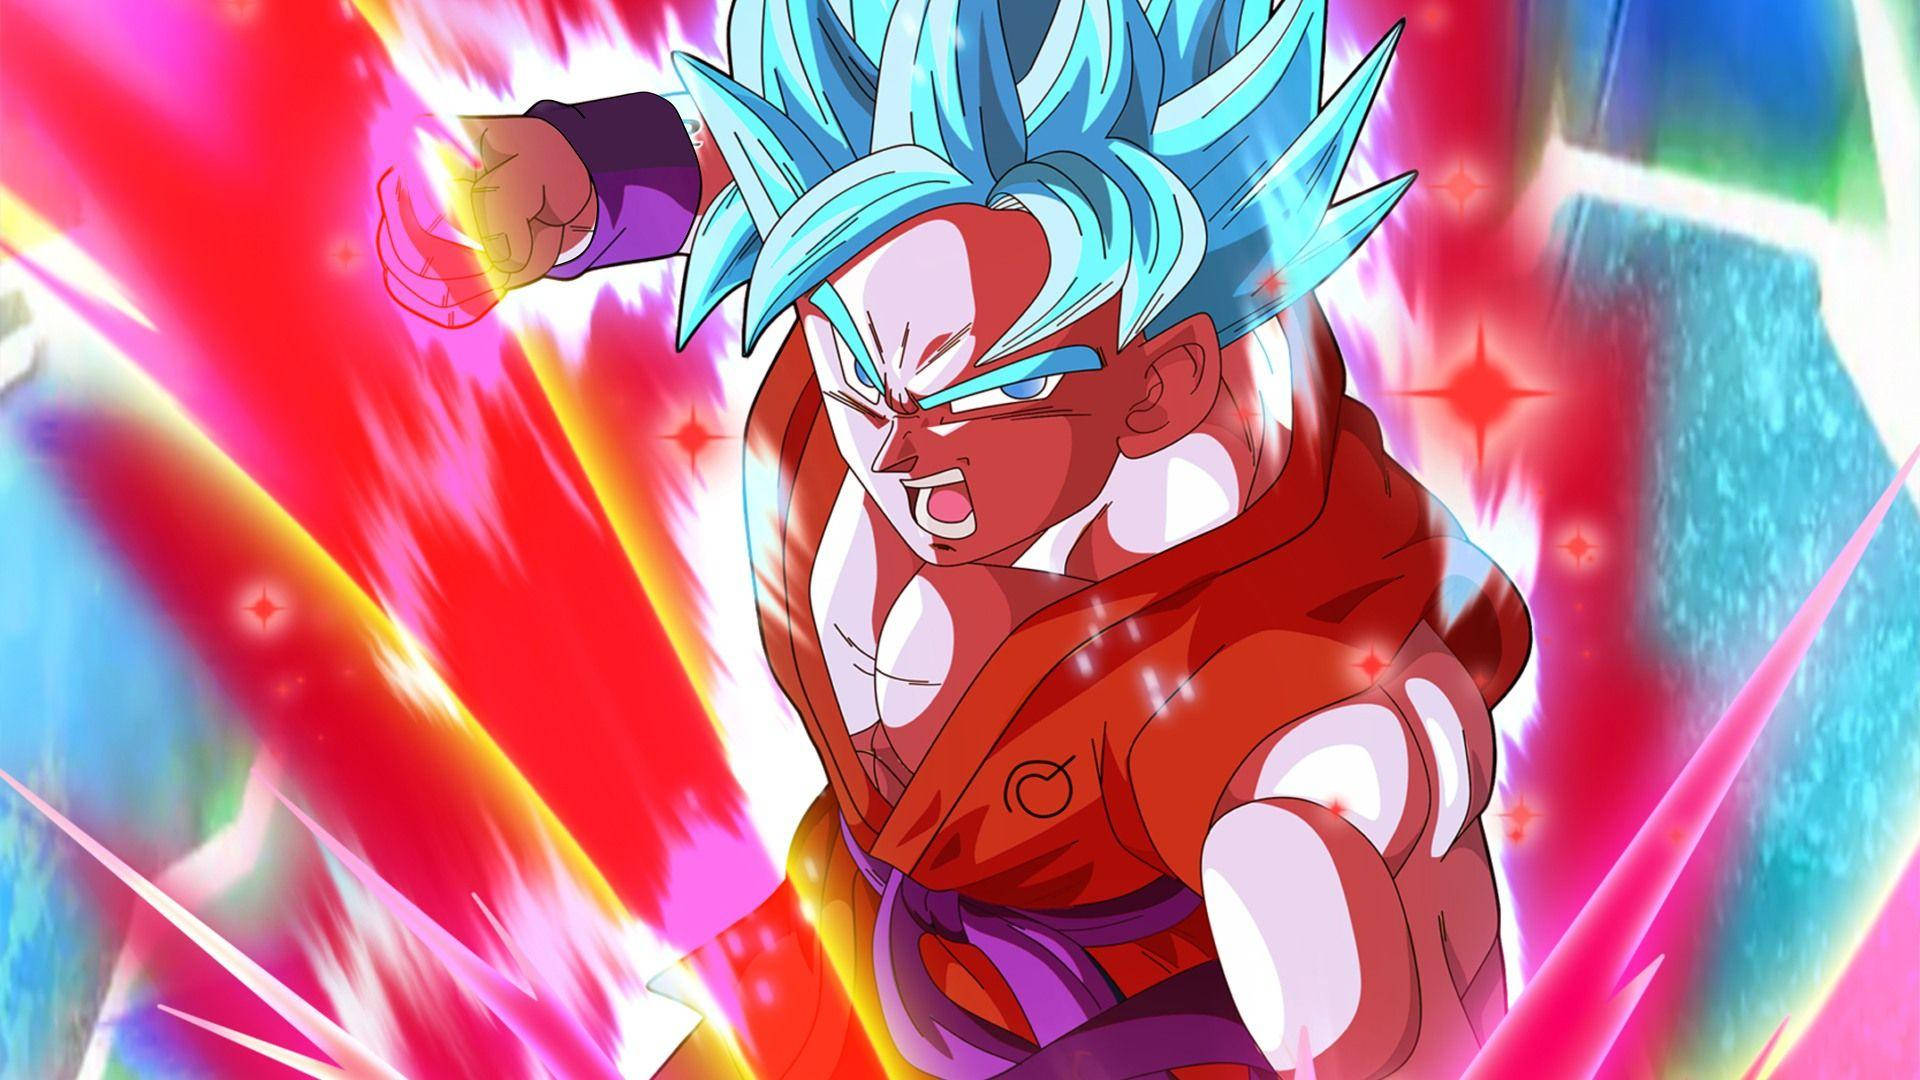 Goku med farverig Kaioken energi Wallpaper